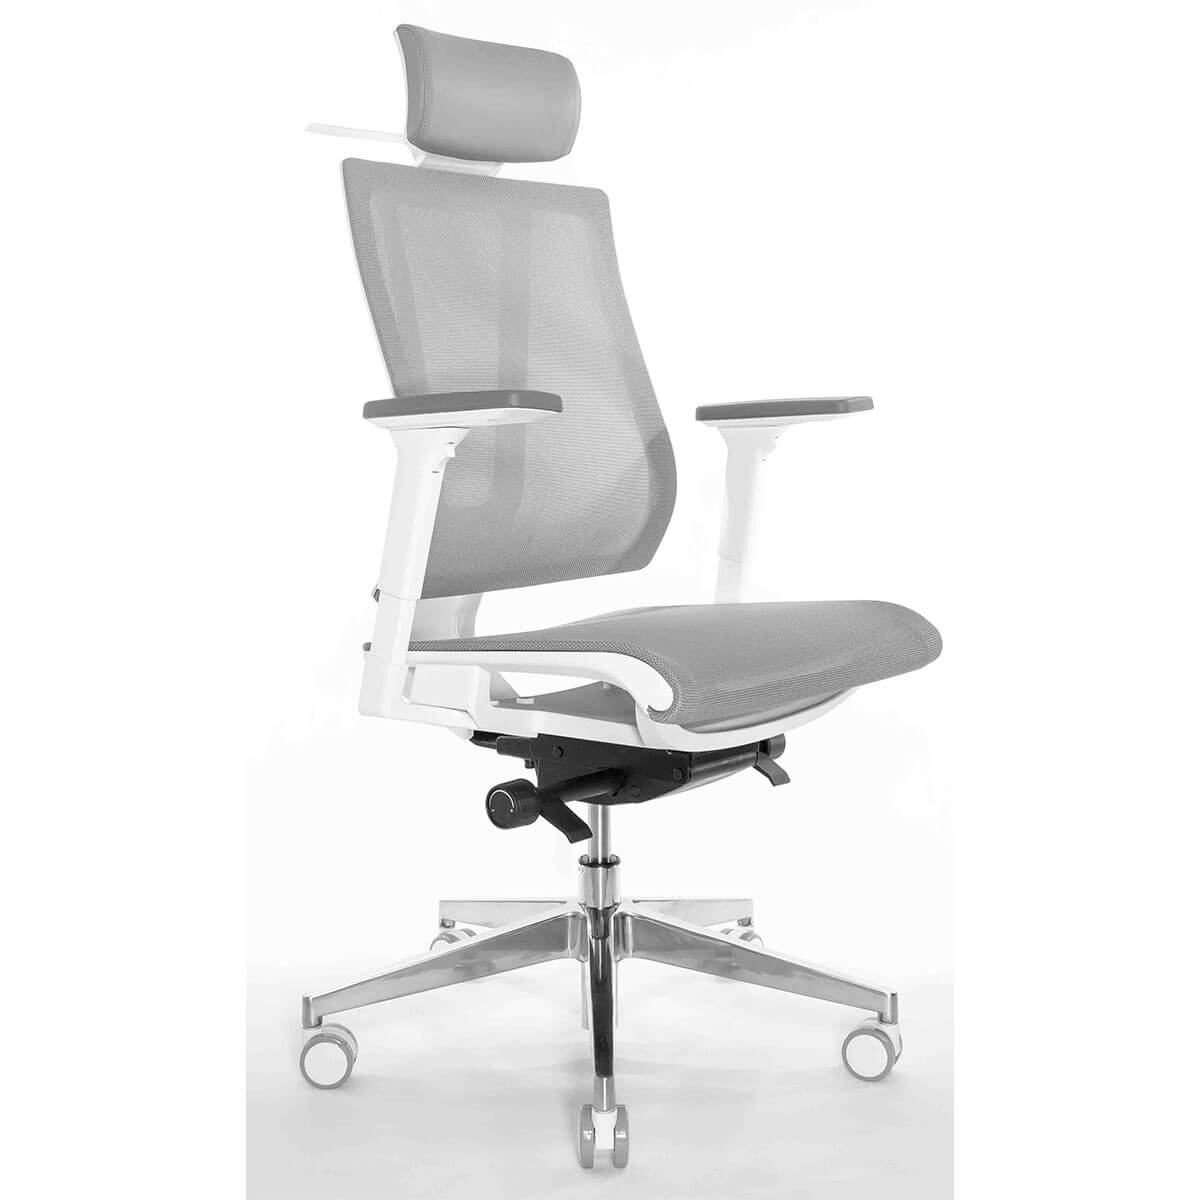 3д визуализация эргономичного офисного кресла Falto G-1 Air